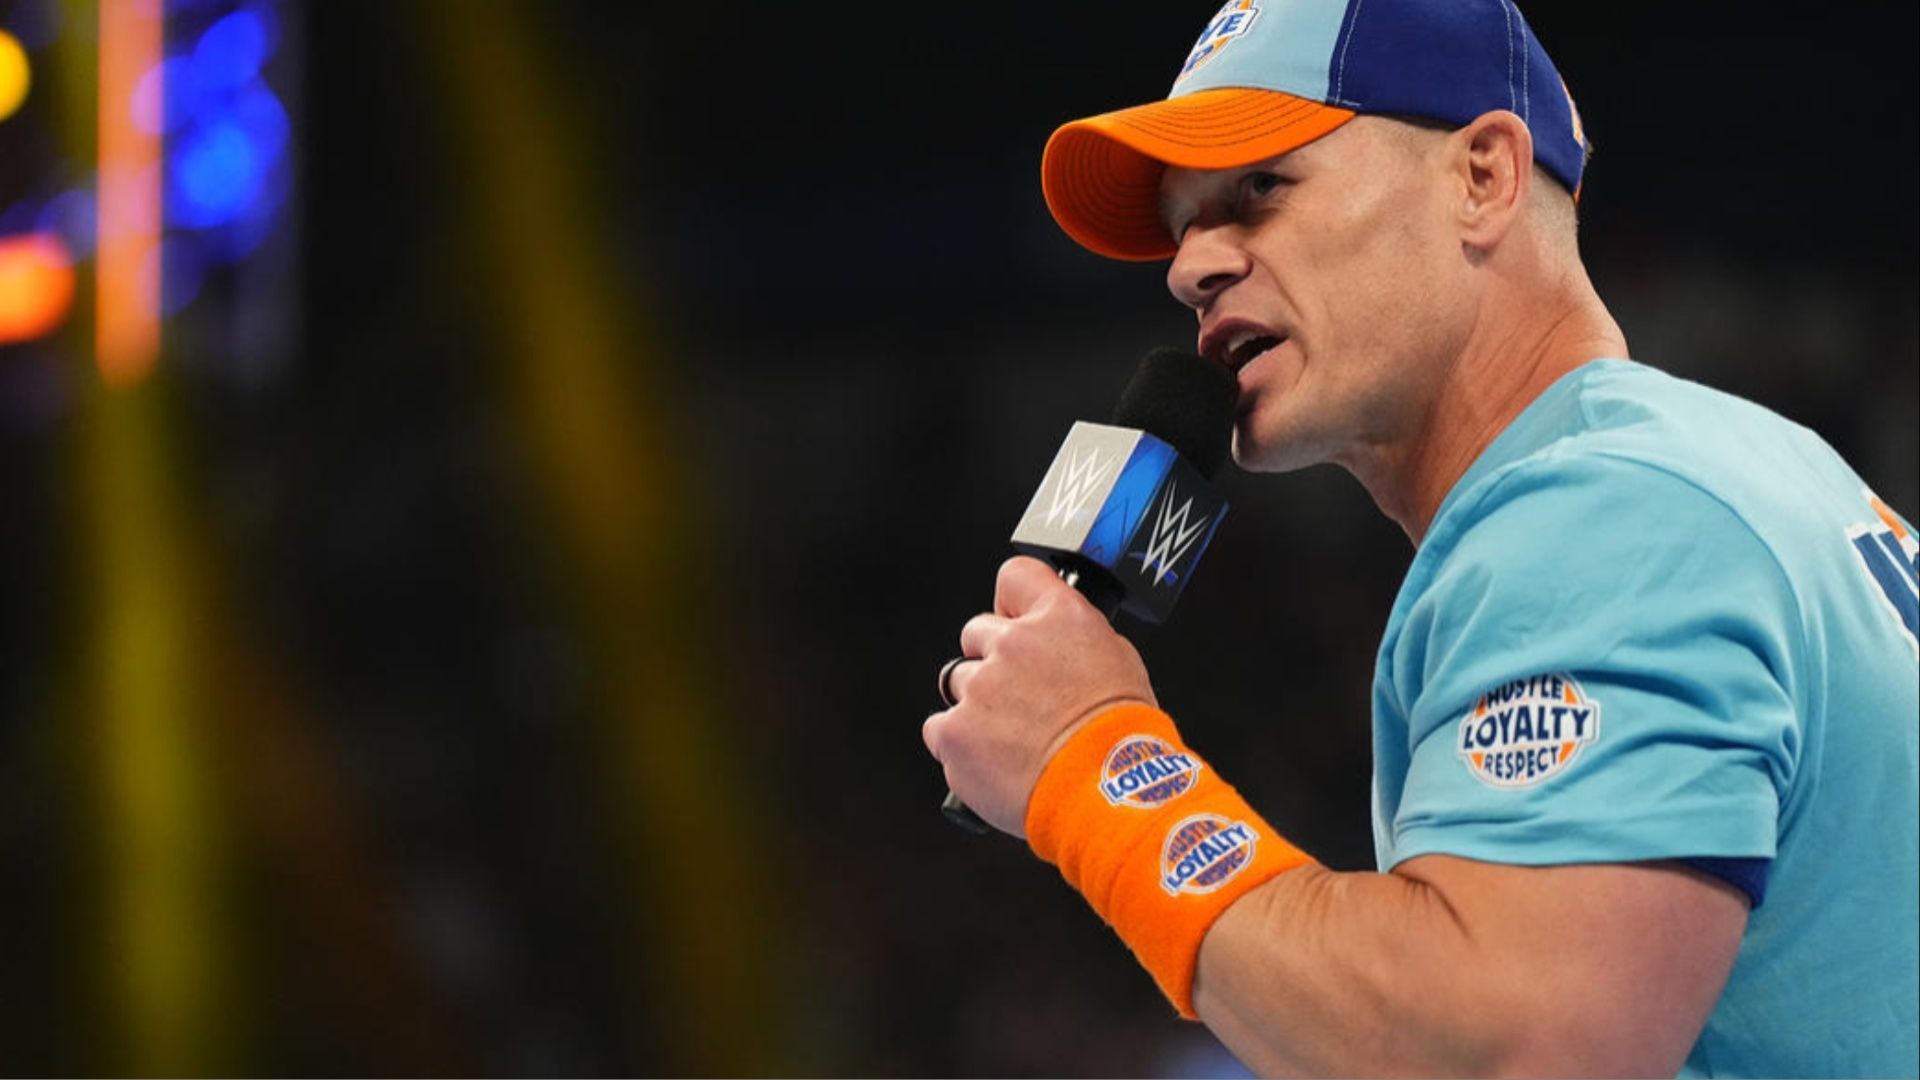 John Cena returned to WWE SmackDown on Sept. 1.